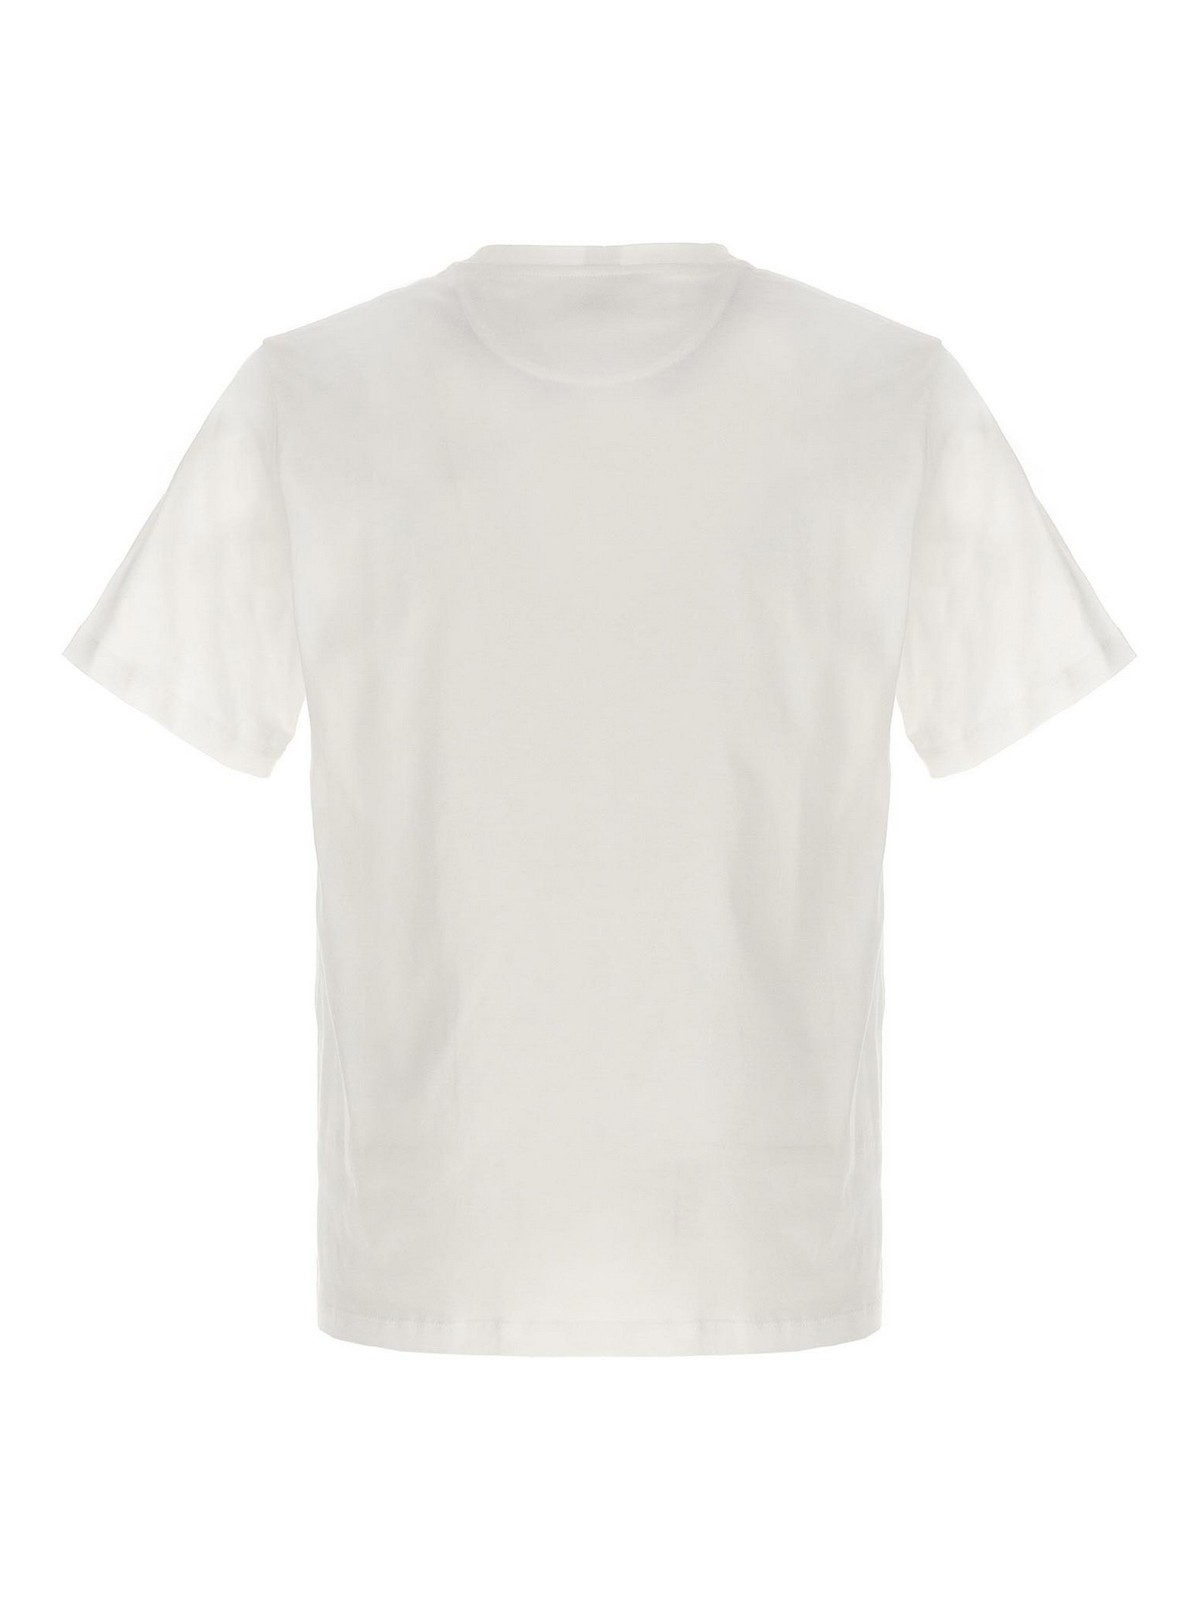 Shop Bally Camiseta - Blanco